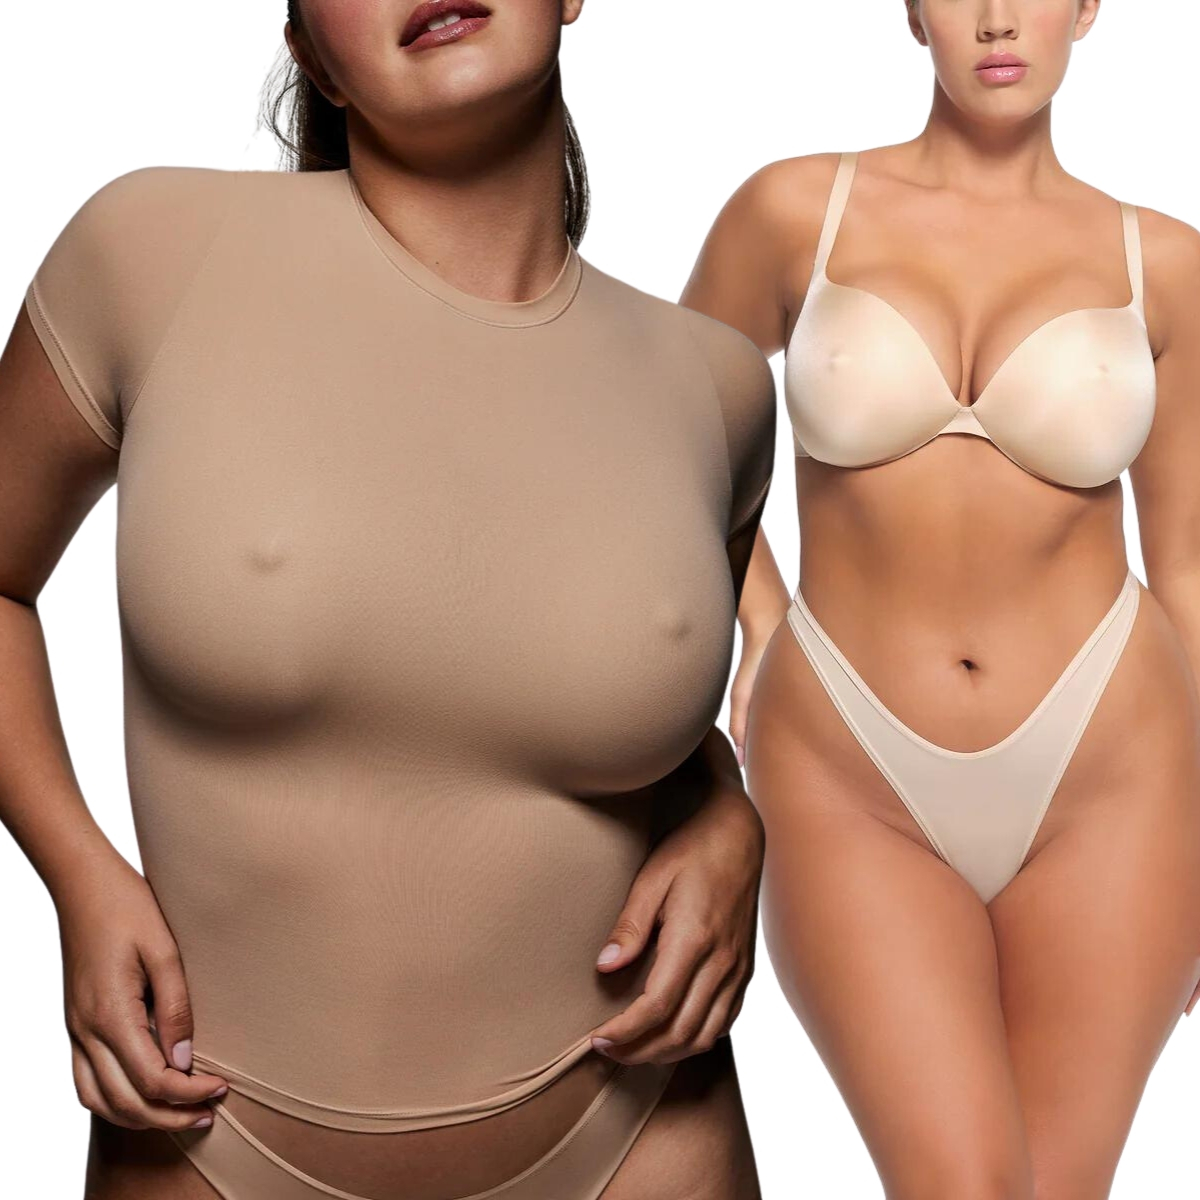 What do you think of the new skims nipple bras 😂😂 #skims #nipplebra